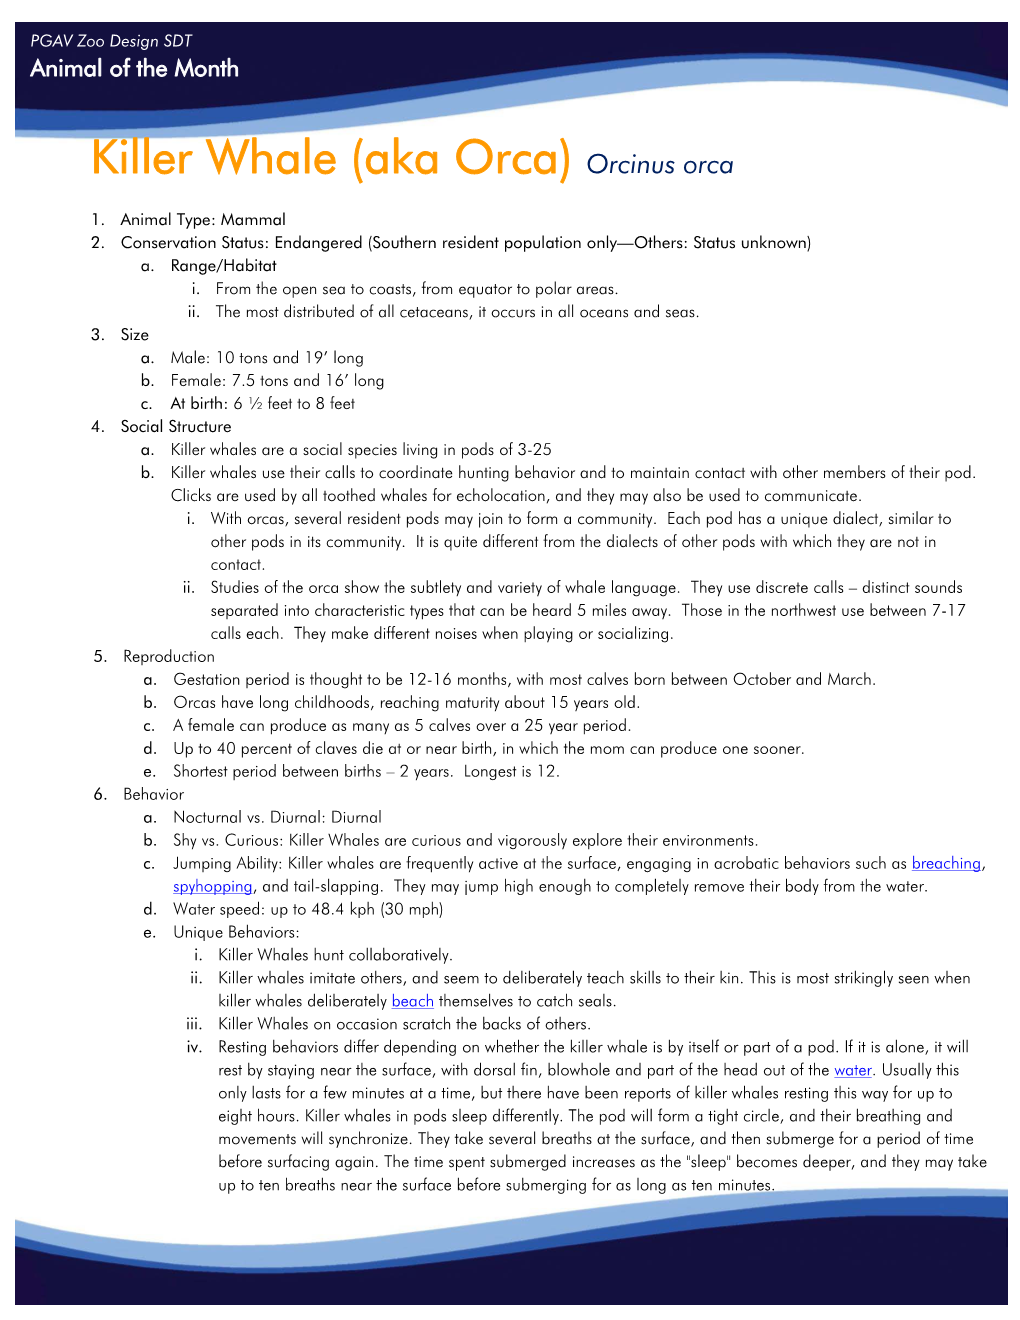 Killer Whale (Aka Orca) Orcinus Orca